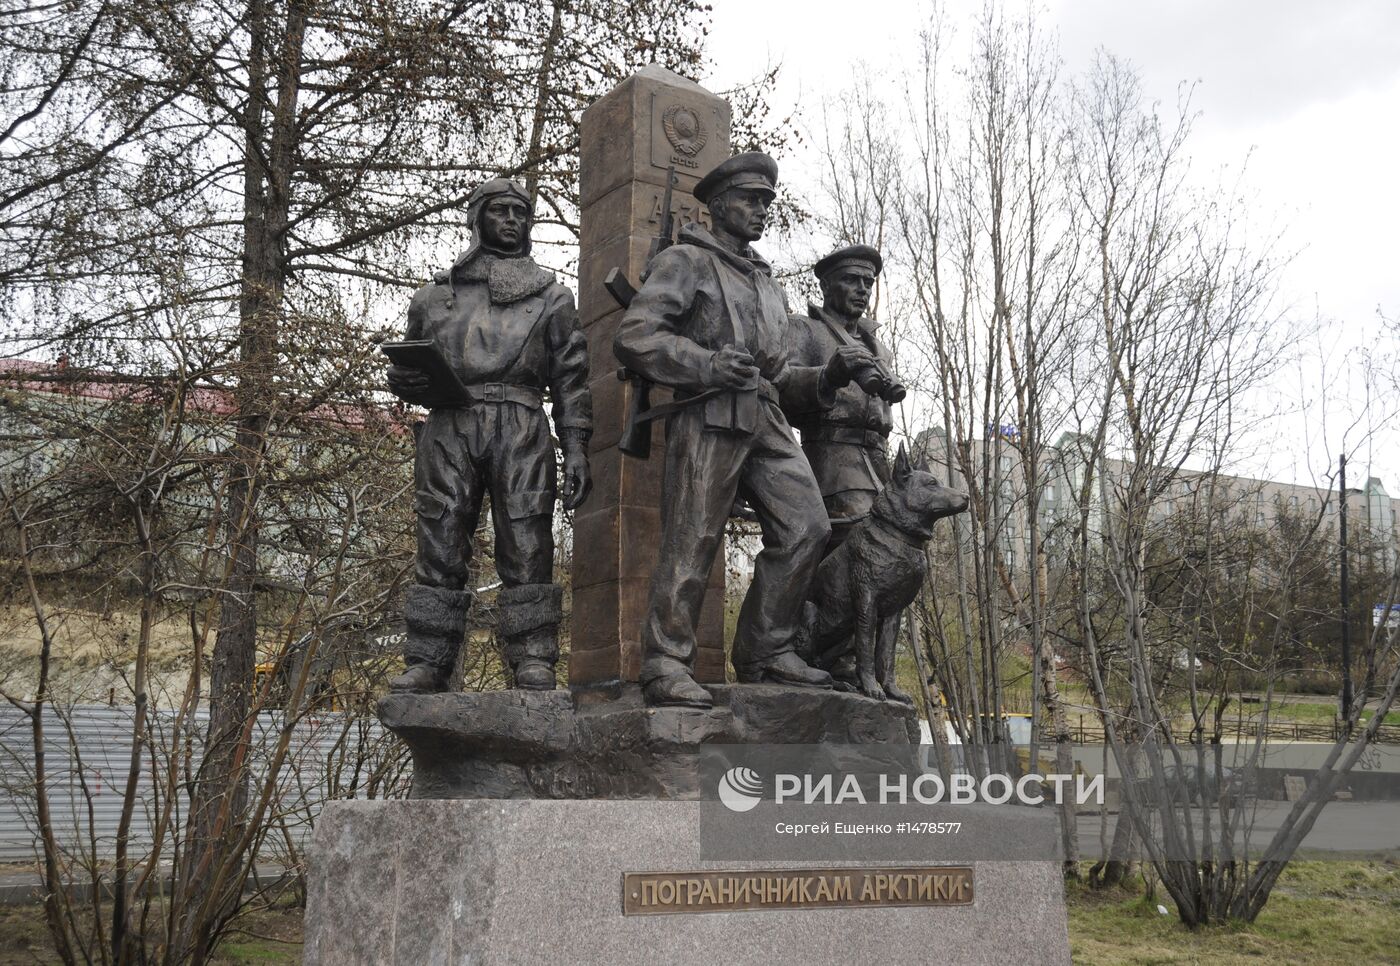 Памятник "Пограничникам Арктики" установлен в Мурманске